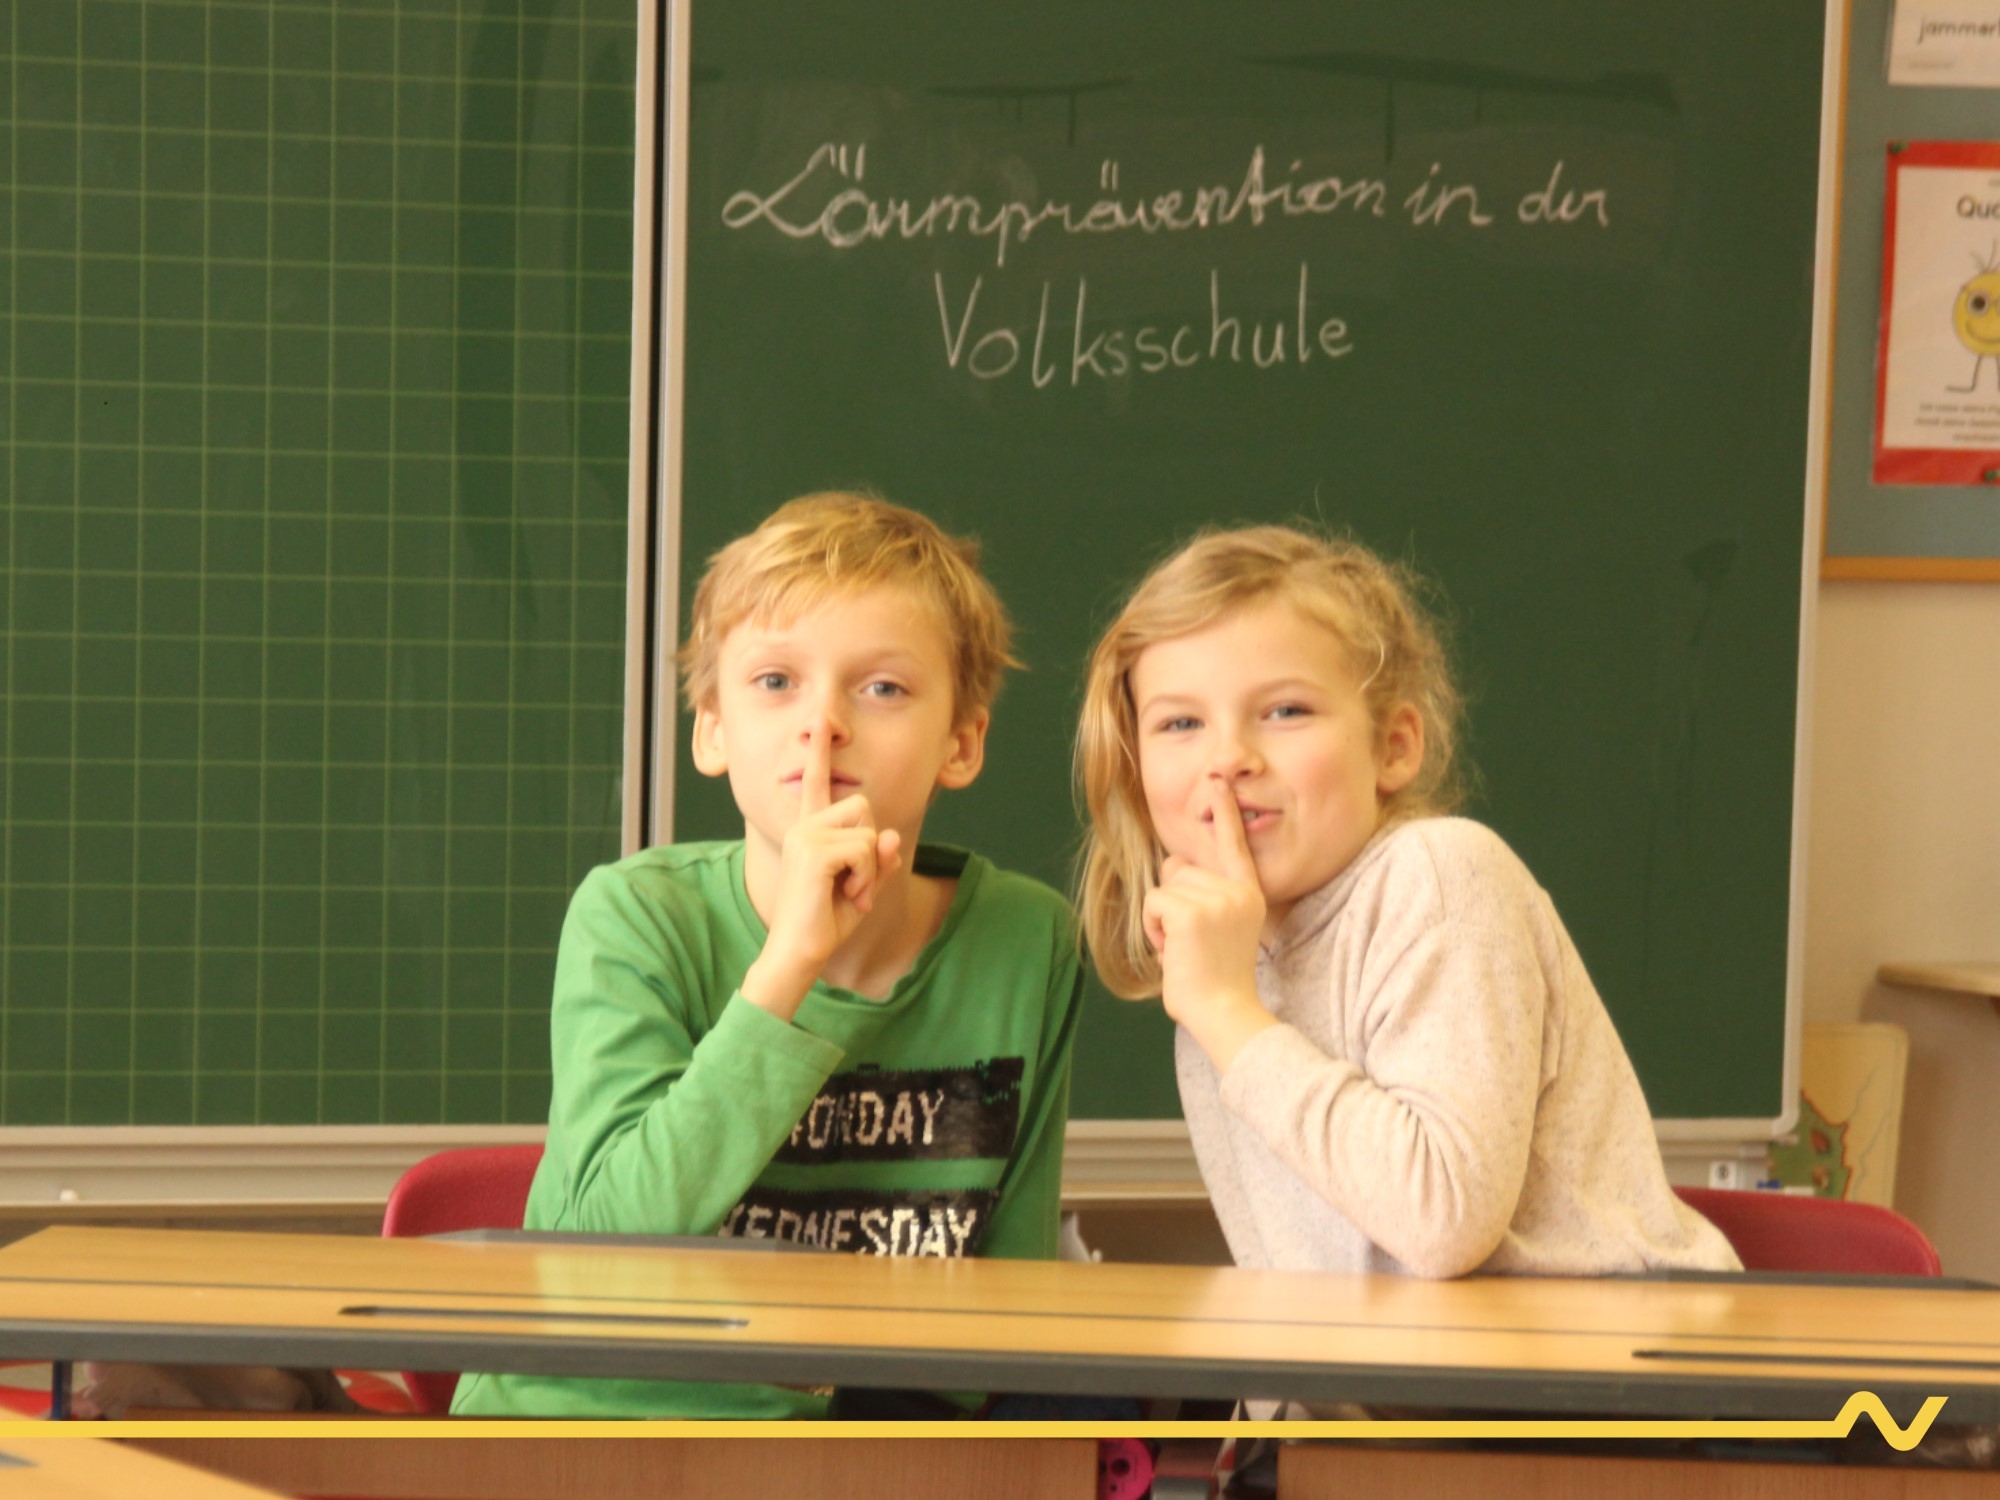 Zwei Volksschulkinder sitzen vor der Tafel im Klassenzimmer und deuten mit dem Zeigefinger die "Leise"-Geste. Auf der Tafel im Hintergrund steht "Lärmprävention in der Volksschule"